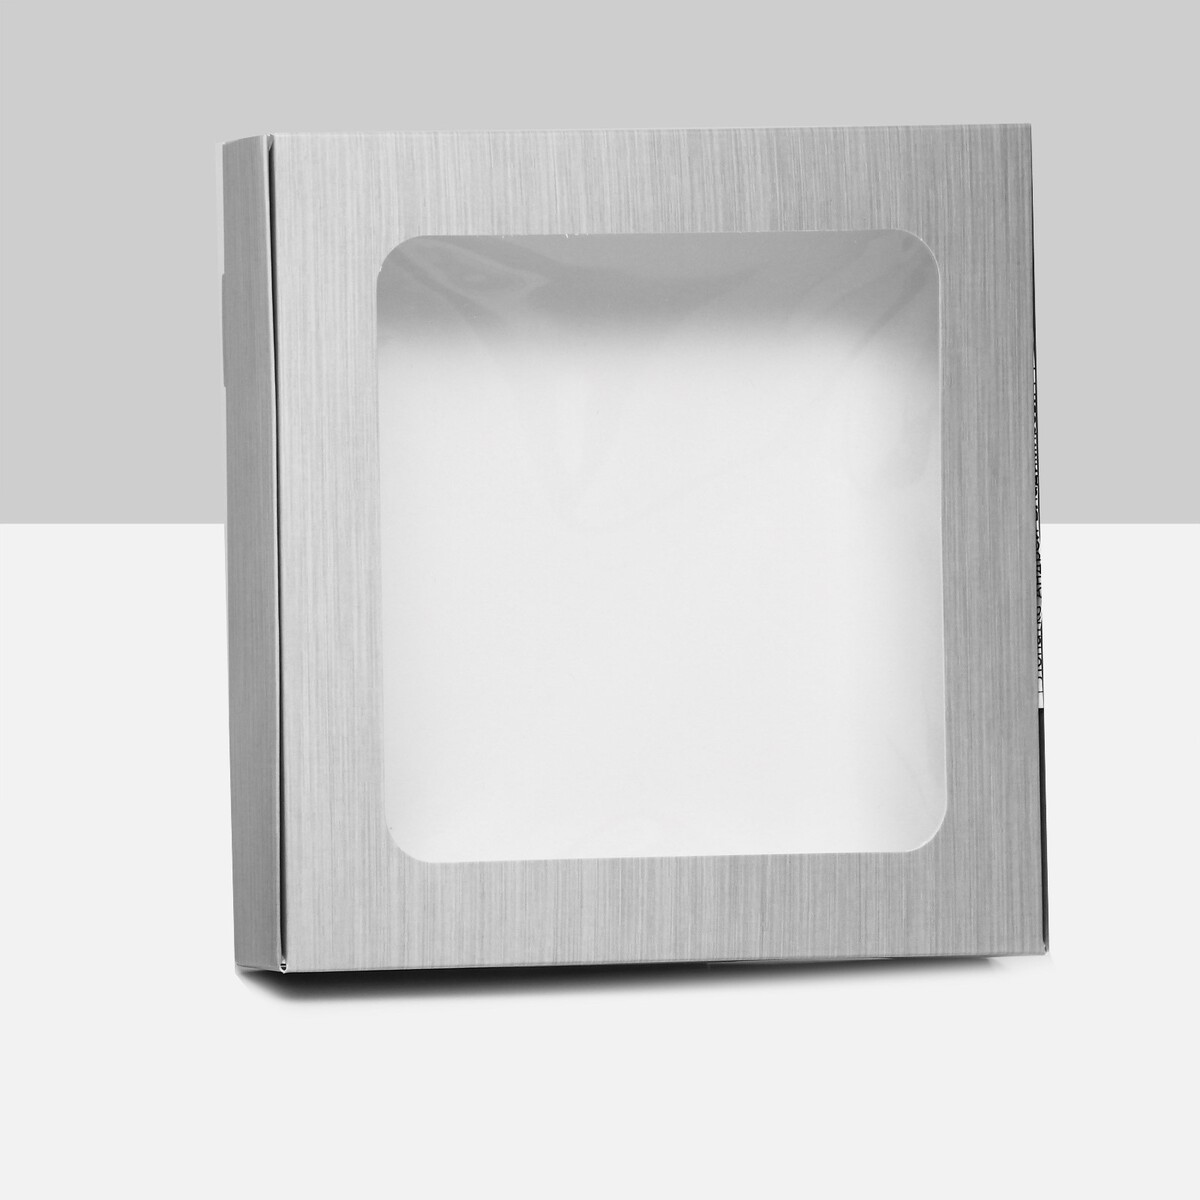 Коробка самосборная, с окном, серебряная, 16 х 16 х 3 см